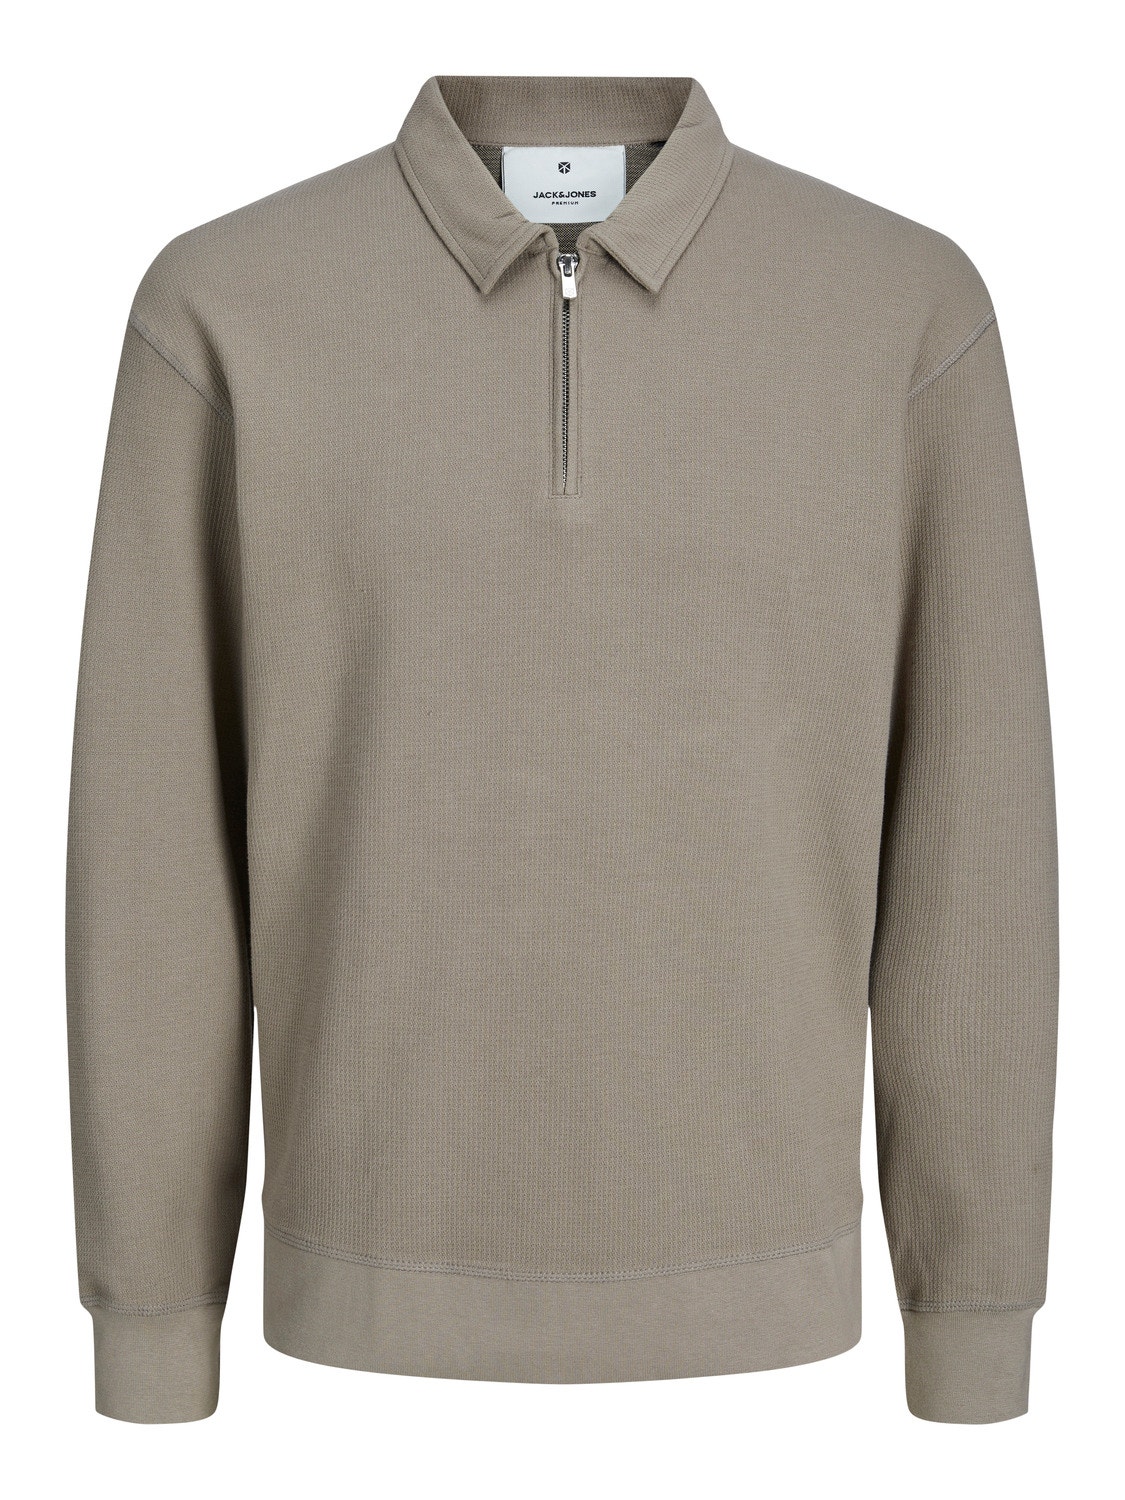 Jack & Jones Plain Half Zip Sweatshirt -Brindle - 12248505